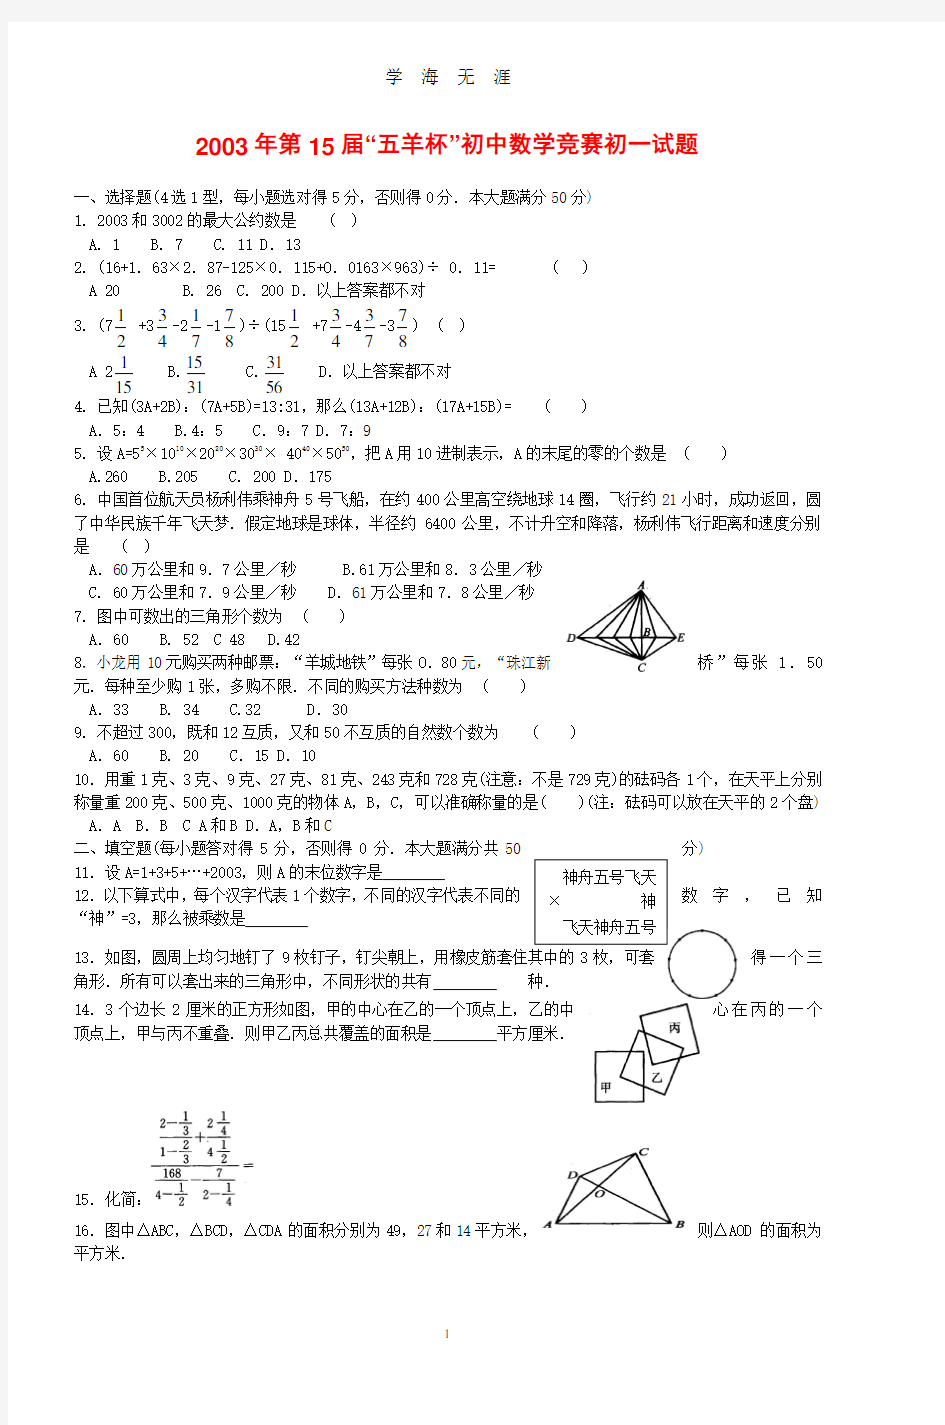 第15届五羊杯初中数学竞赛初一试题(2020年8月整理).pdf